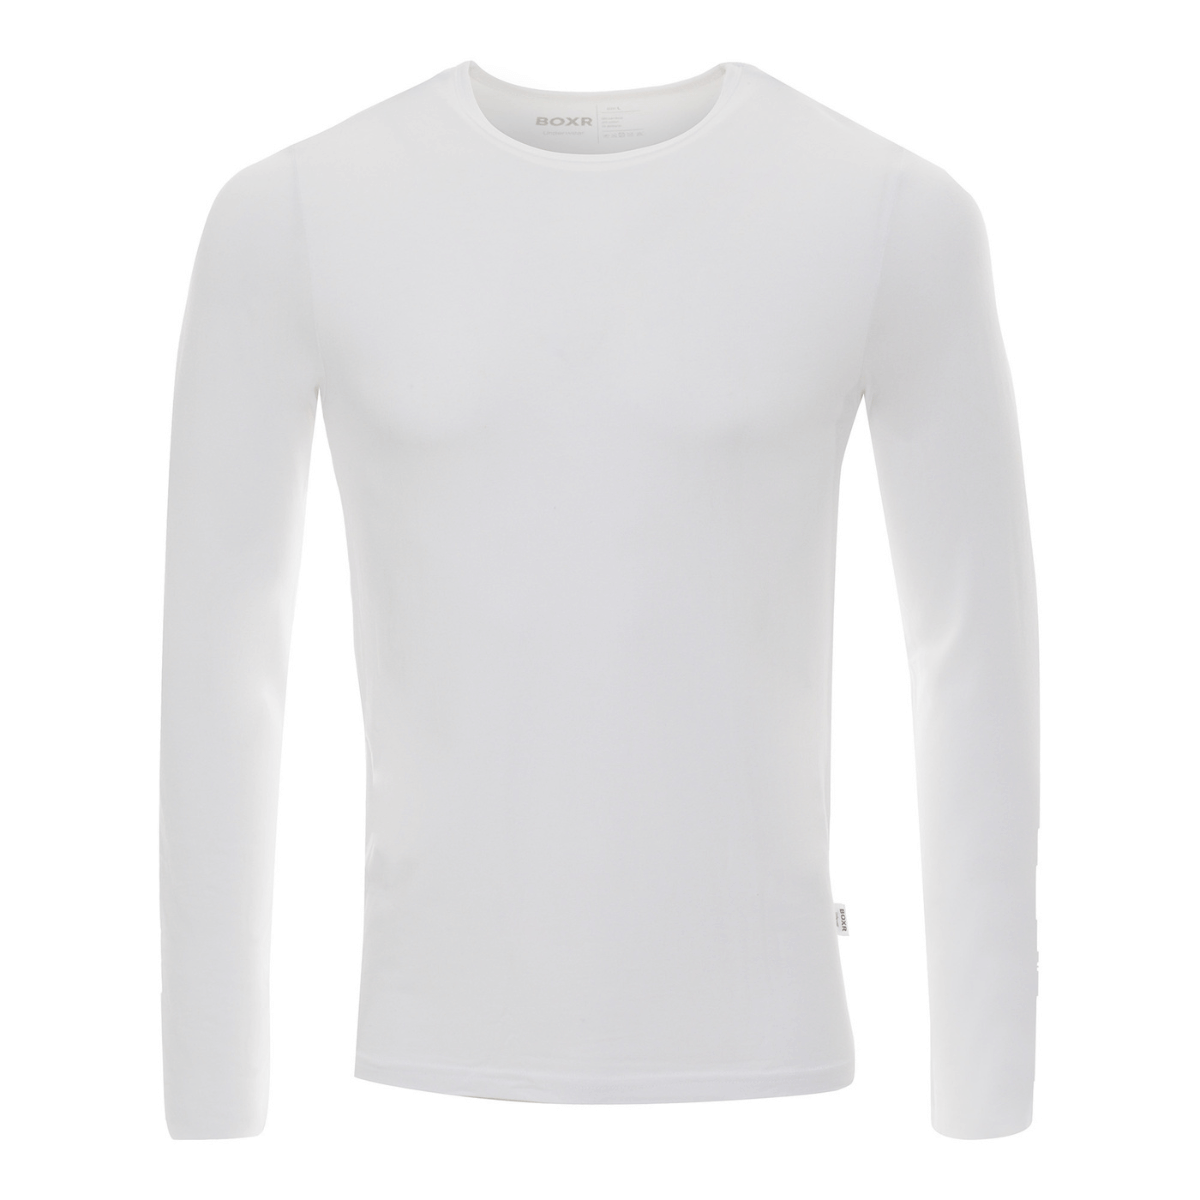 BOXR | T-shirt à manches longues en bambou - Lot de 4 - Blanc